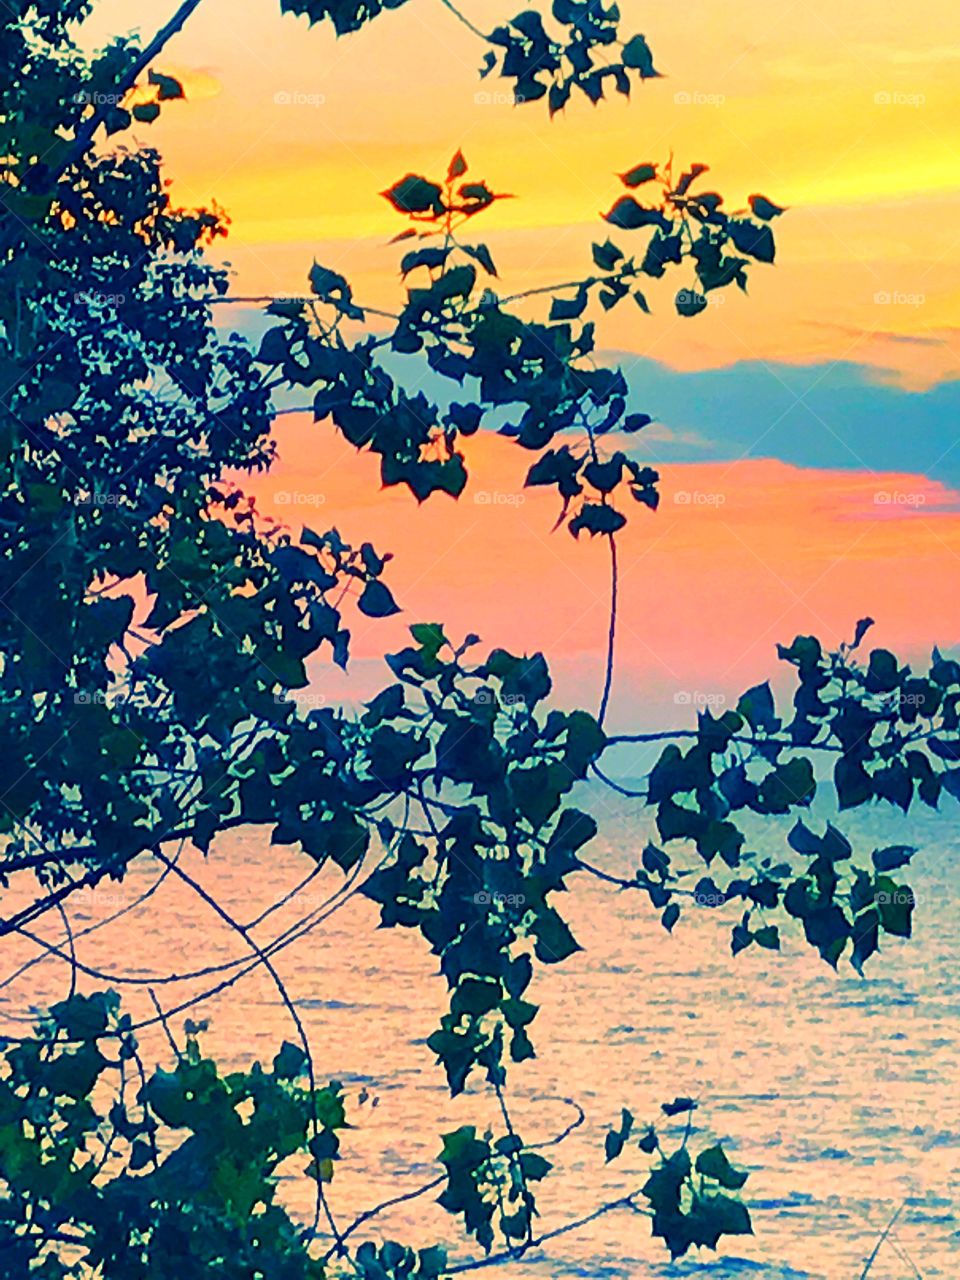 Lake Michigan sunset 